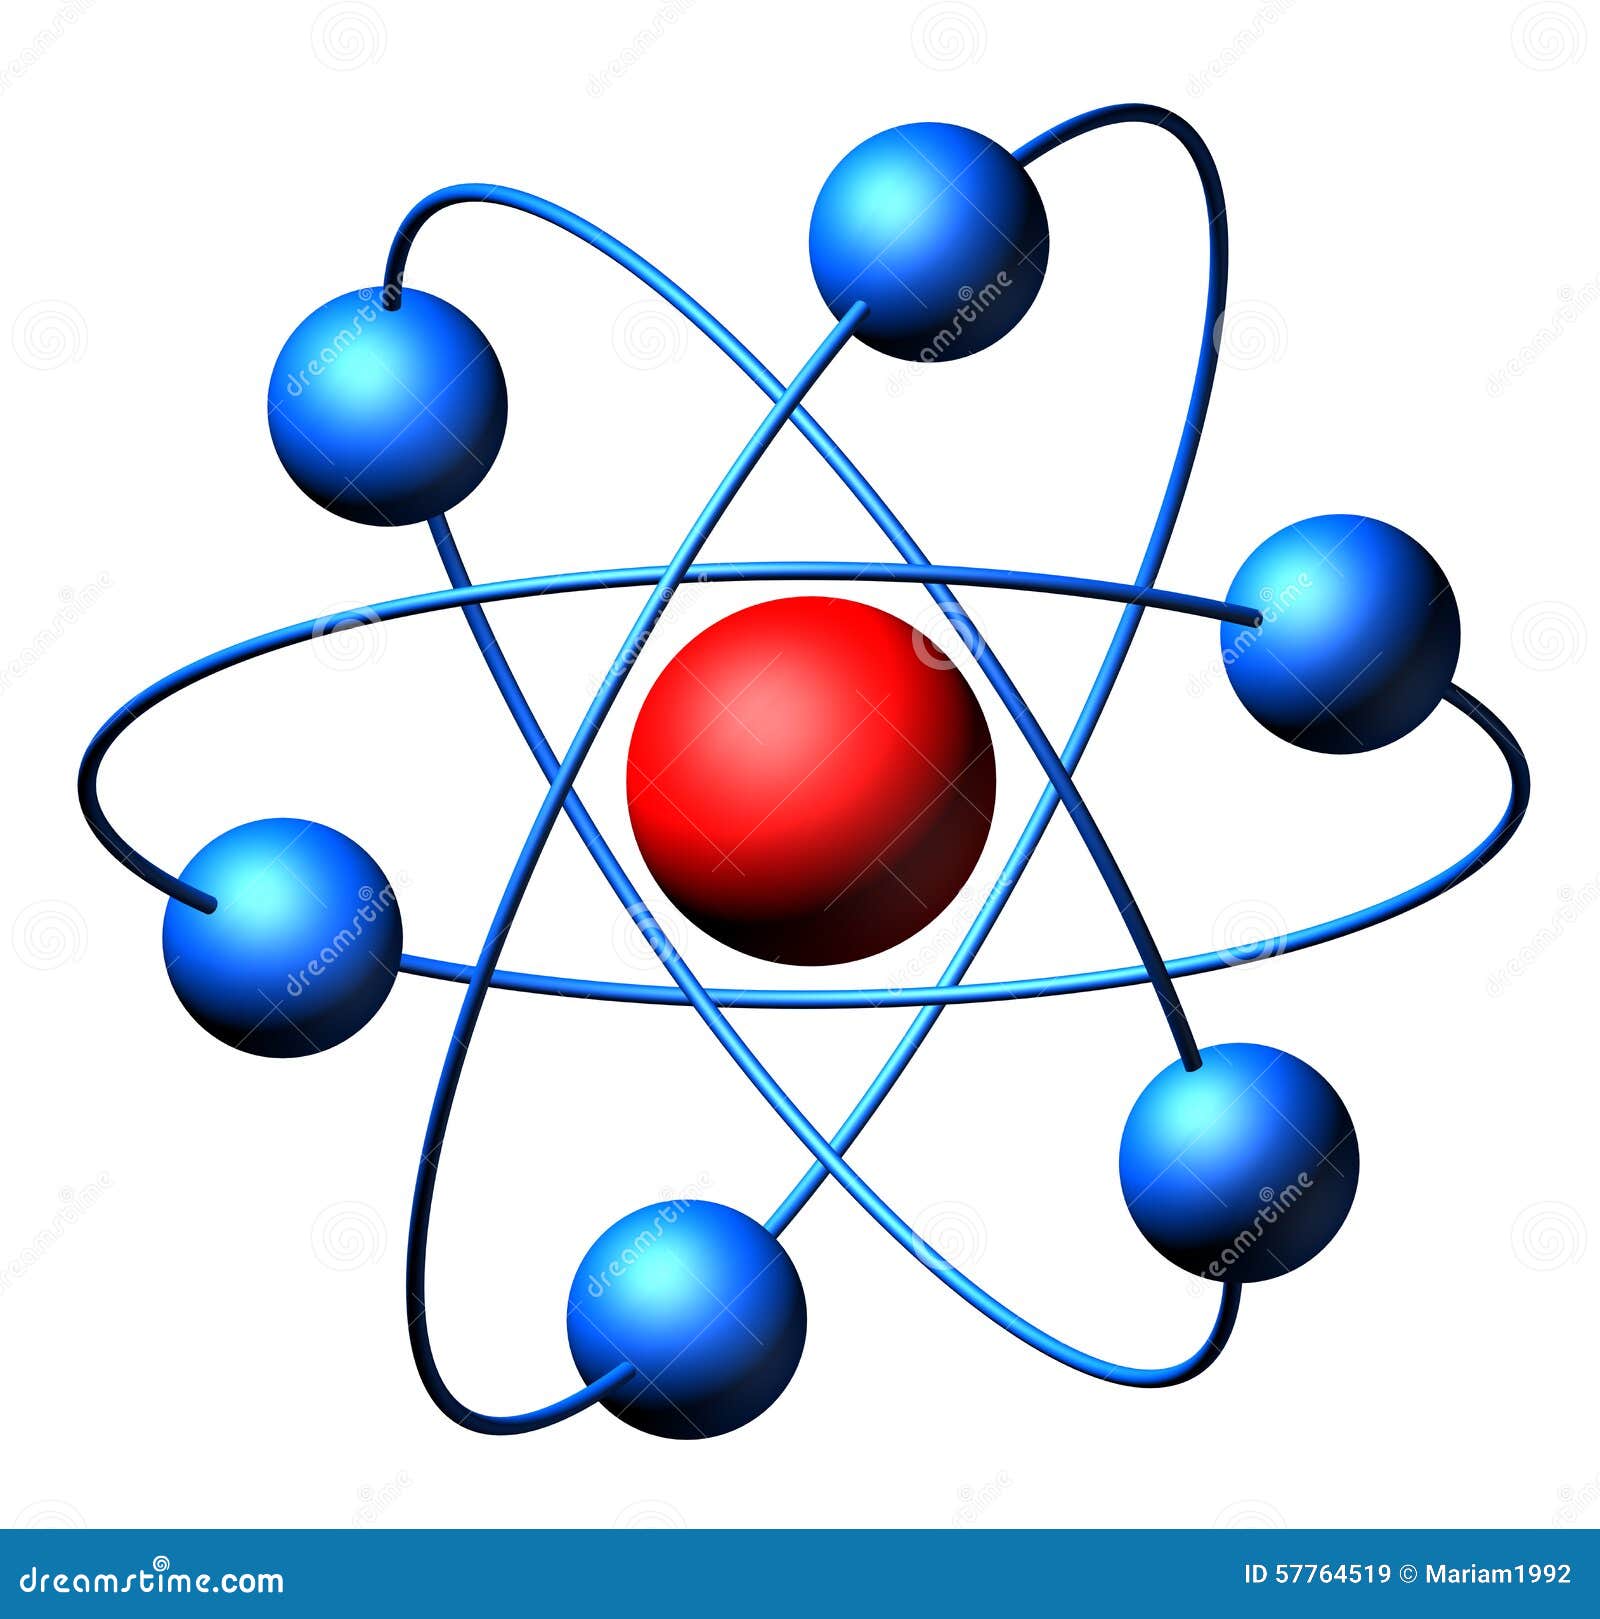 Imagen De Atomos Y Moleculas